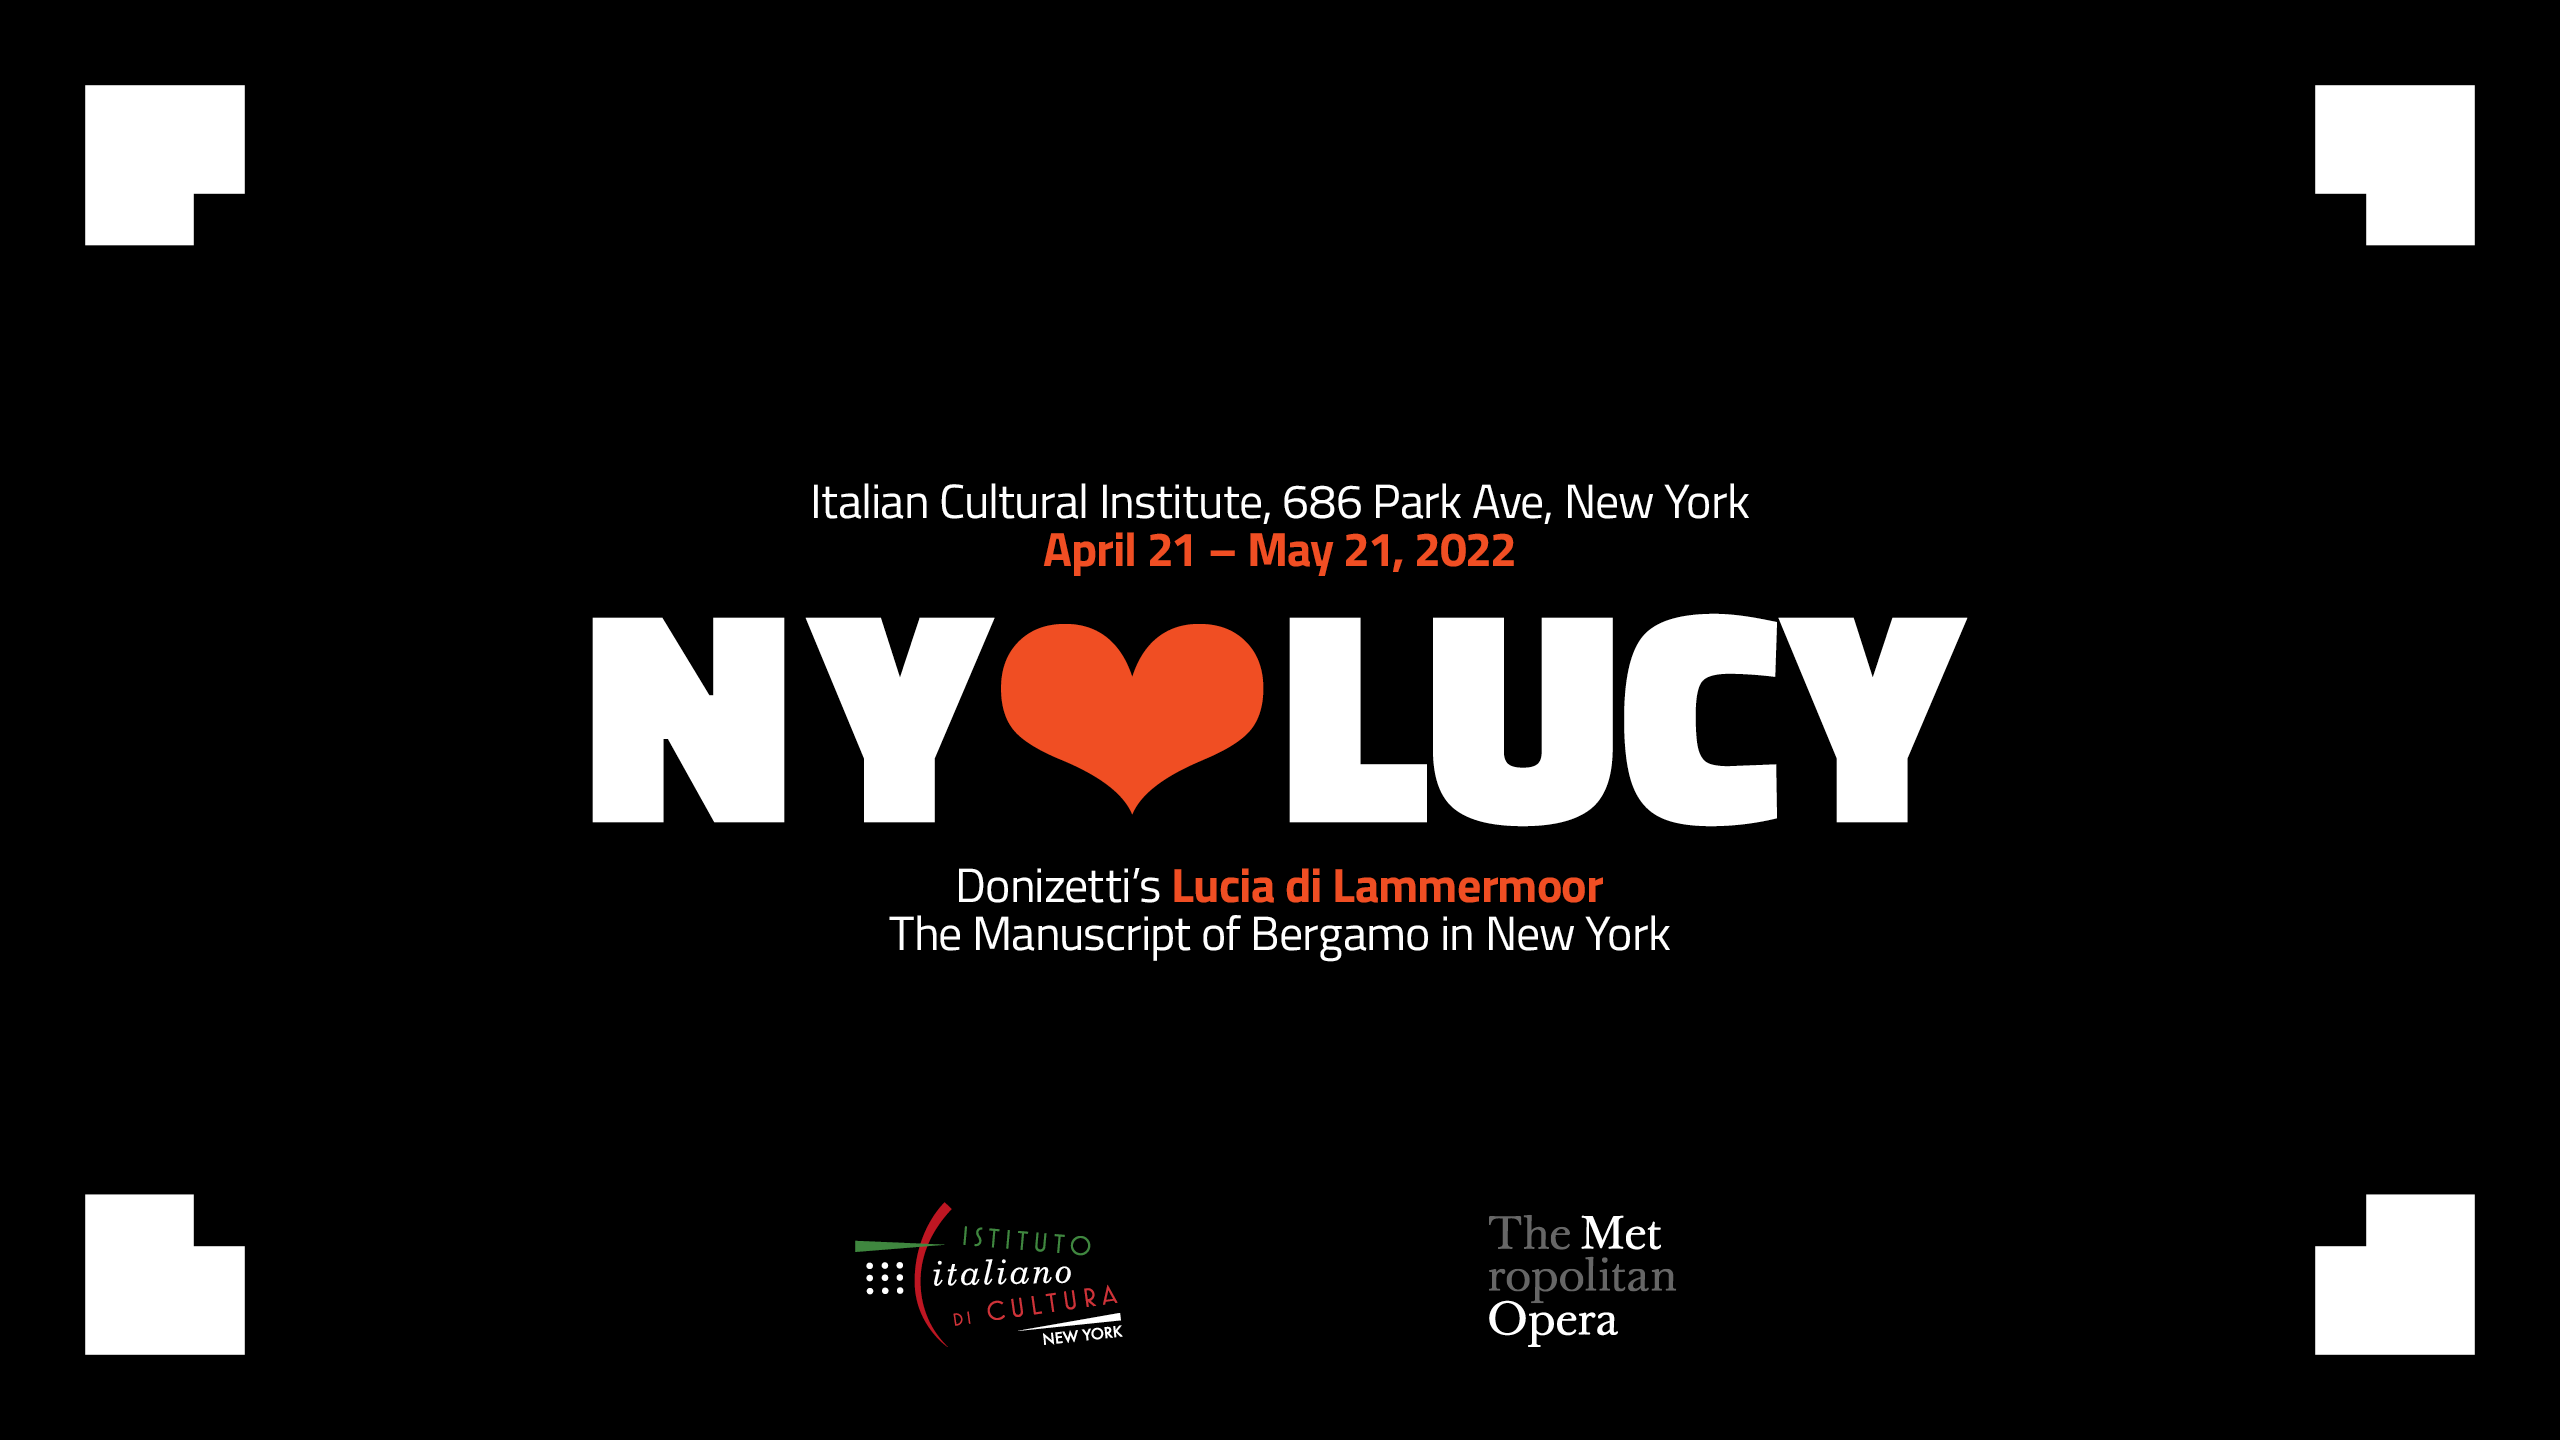 La partitura autografa della Lucia di Lammermoor di Donizetti a New York da Bergamo in occasione della nuova produzione al Metropolitan Opera diretta da Riccardo Frizza